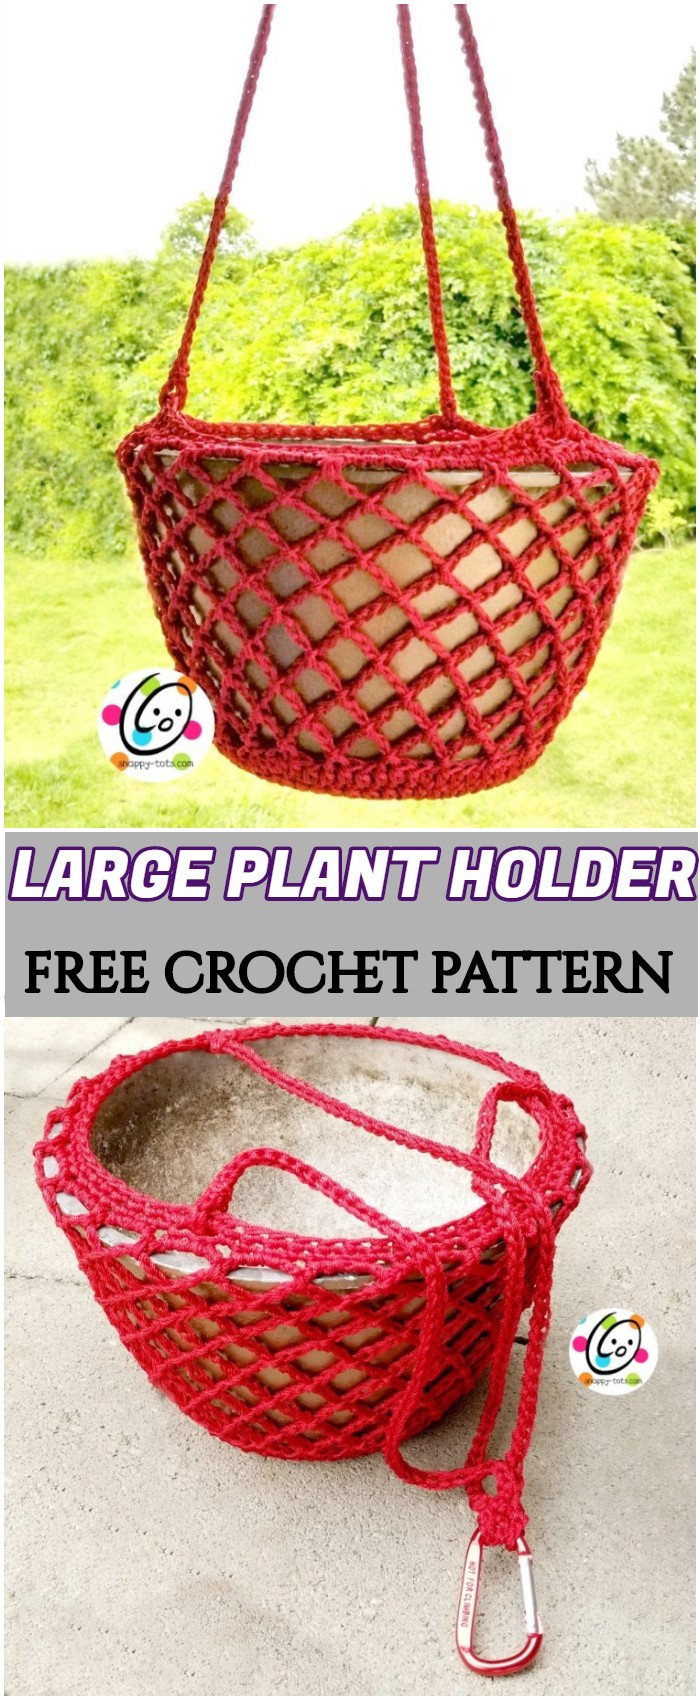 Crochet Large Plant Holder